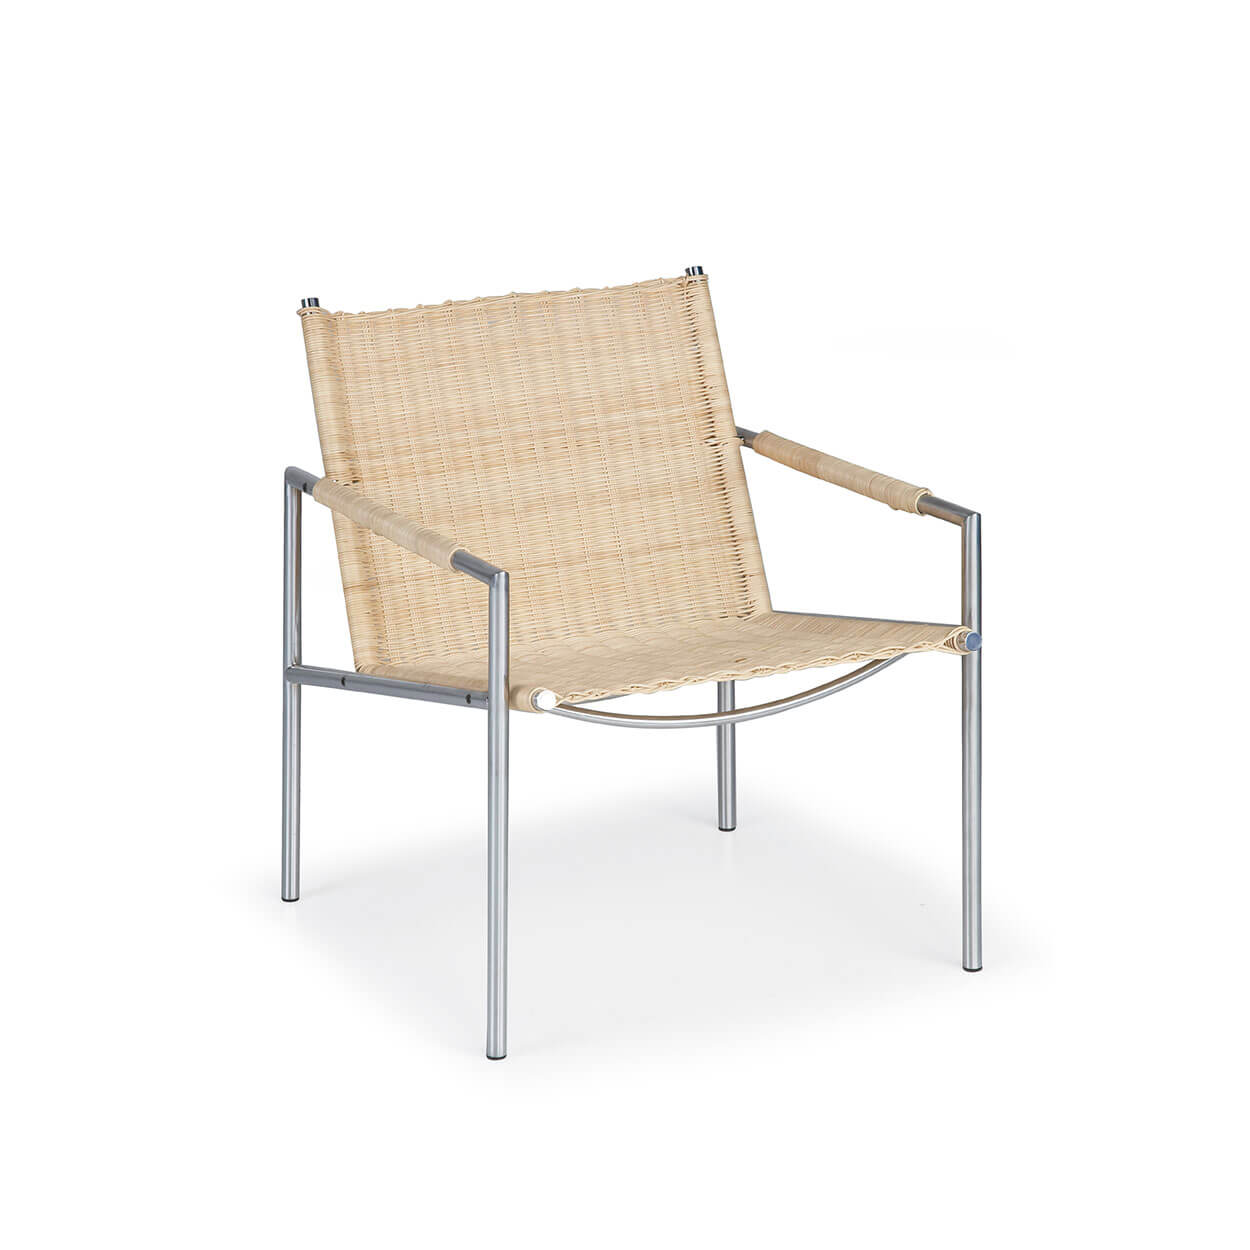 Rijk zoeken schrijven SZ 01 fauteuil (pitriet) | Spectrum Design